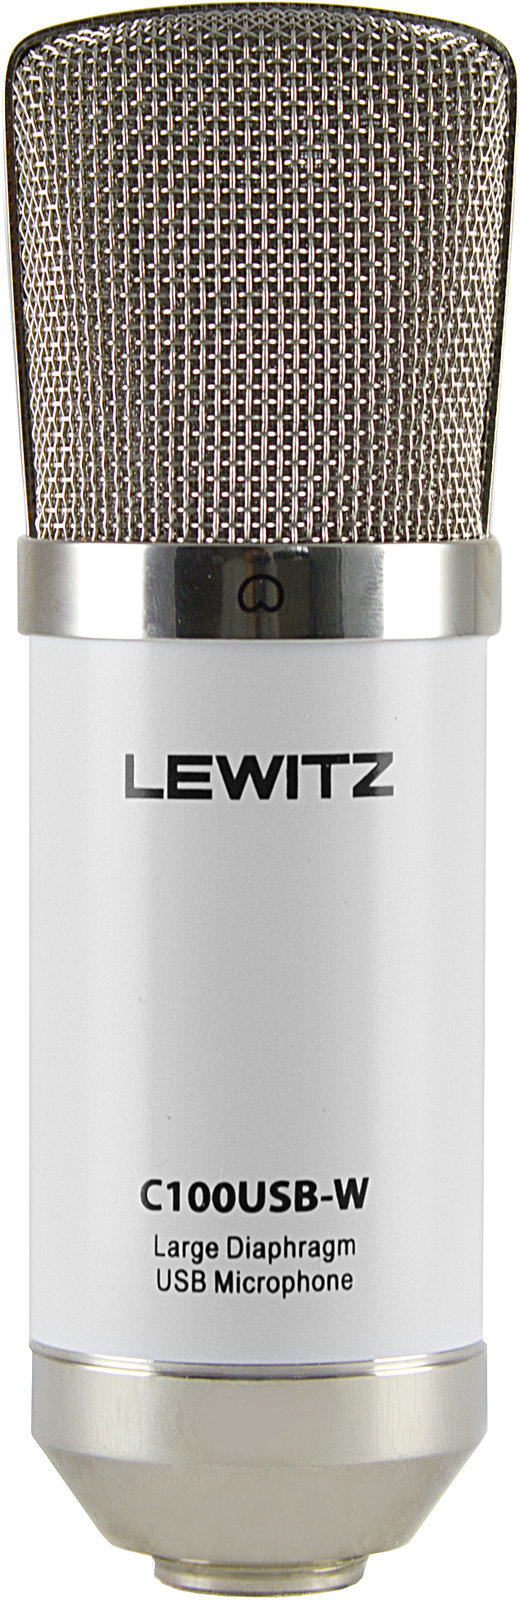 USB-mikrofoni Lewitz C120USB